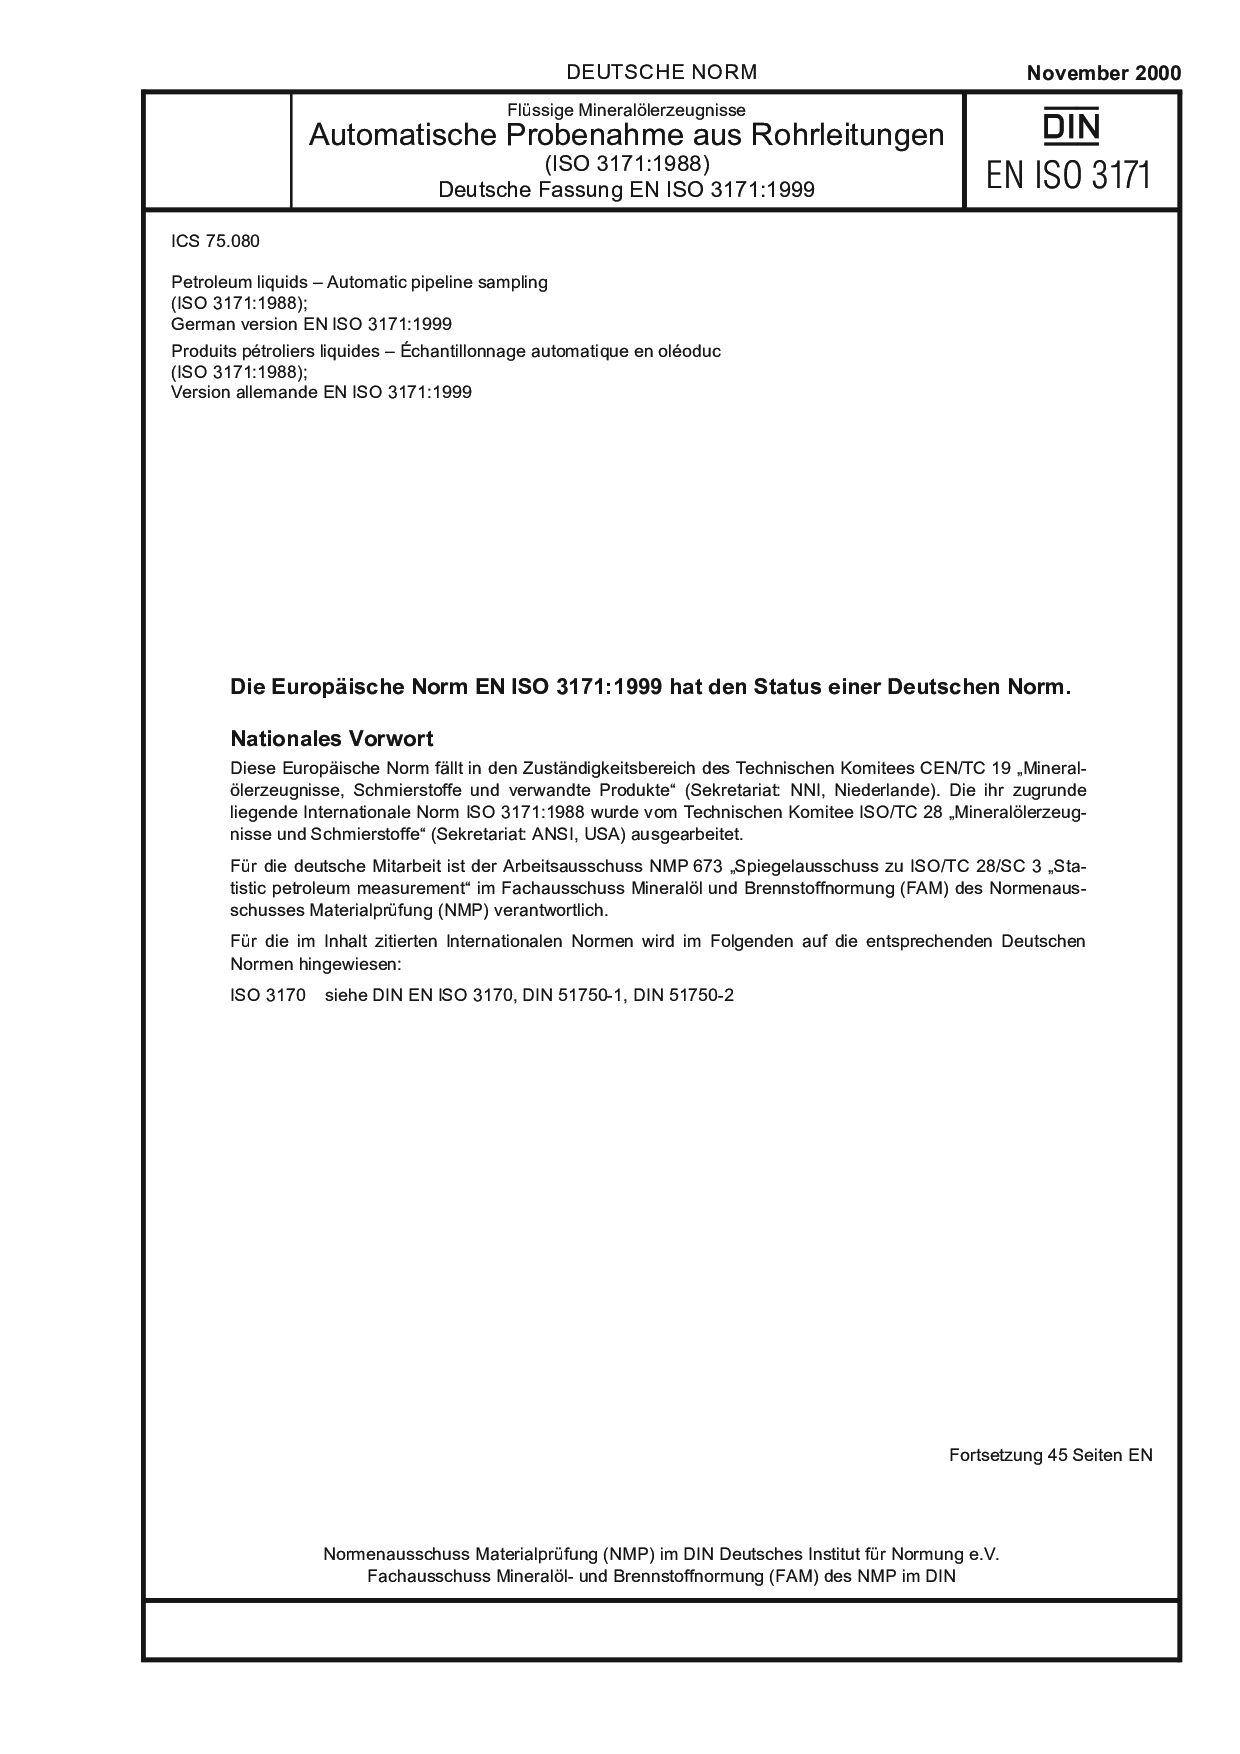 DIN EN ISO 3171:2000封面图